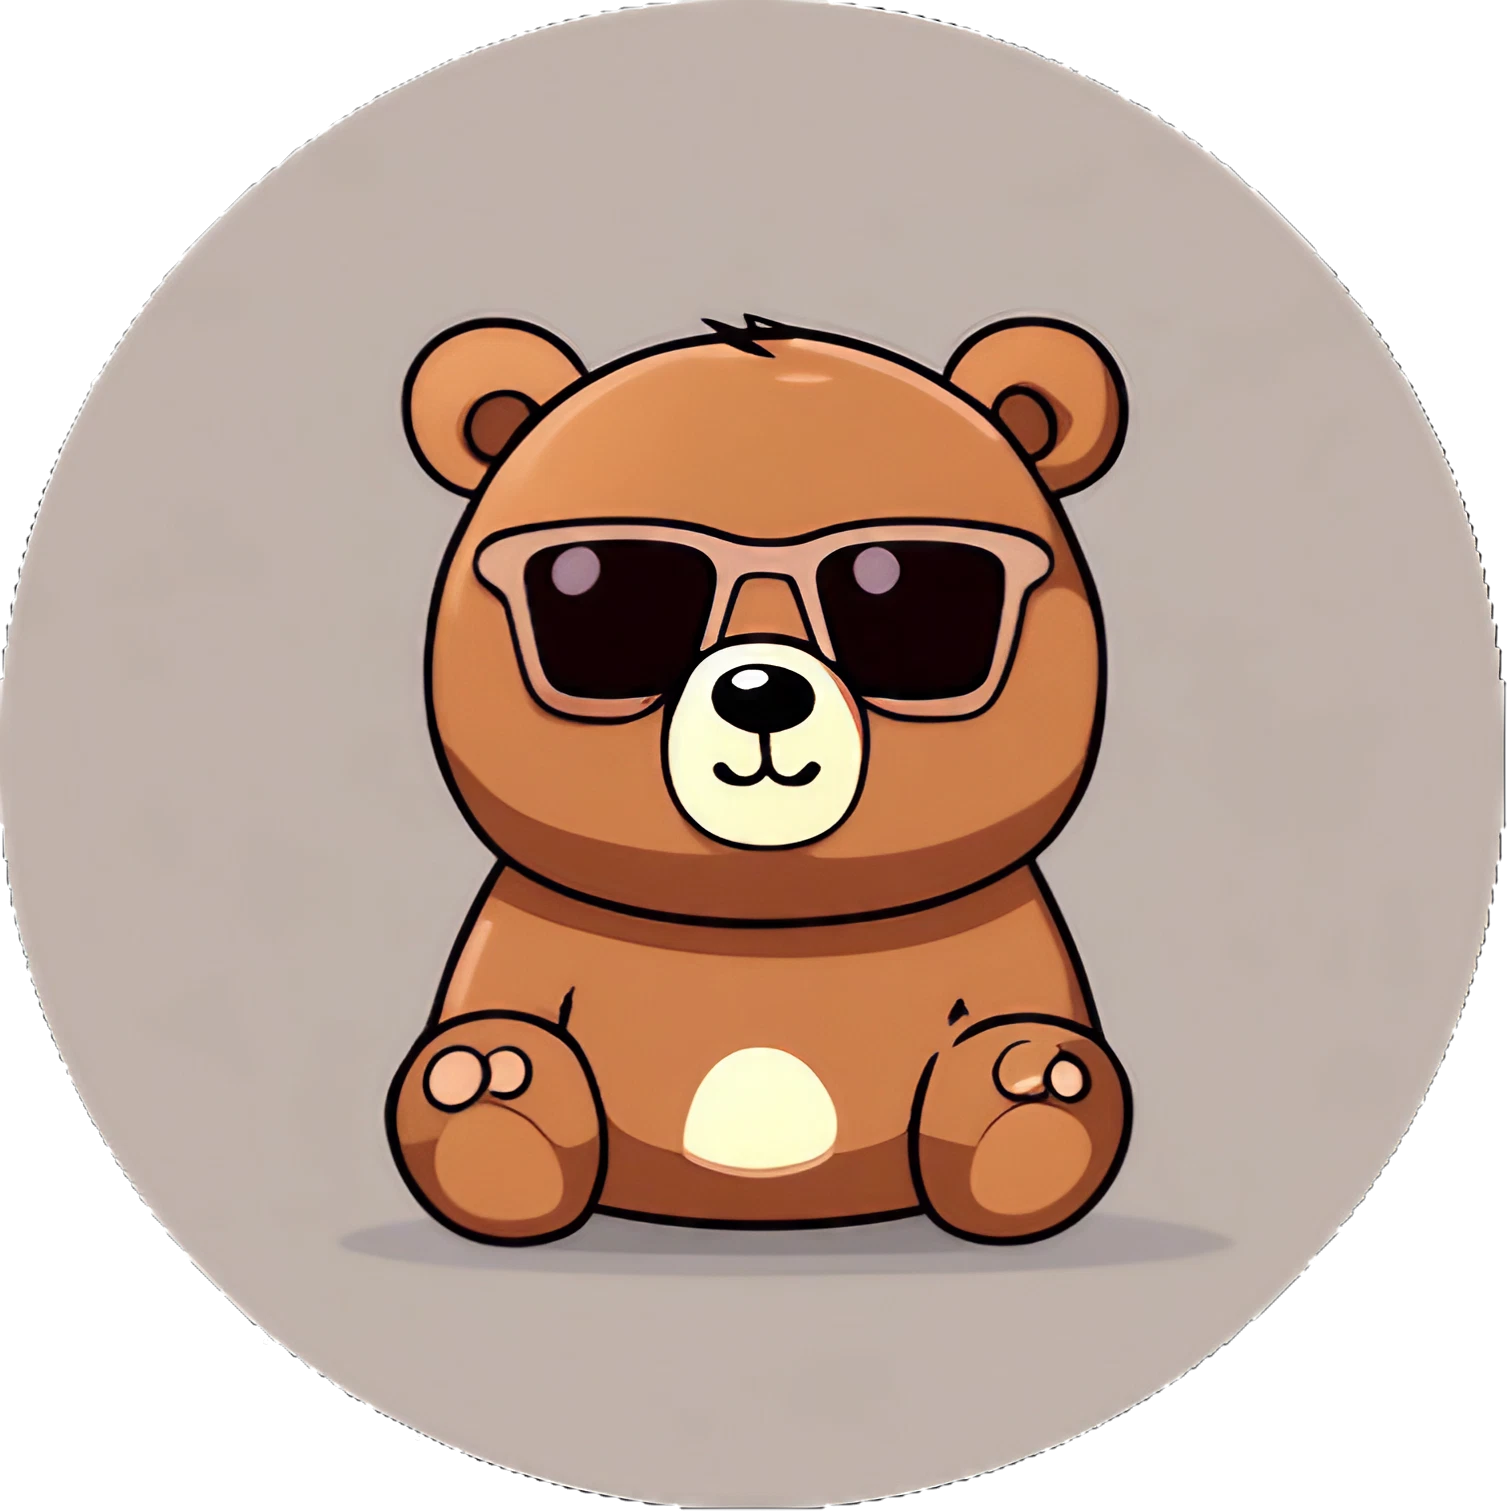 Cute Kawaii Teddybär mit Sonnenbrille - Sticker - 3x3cm groß